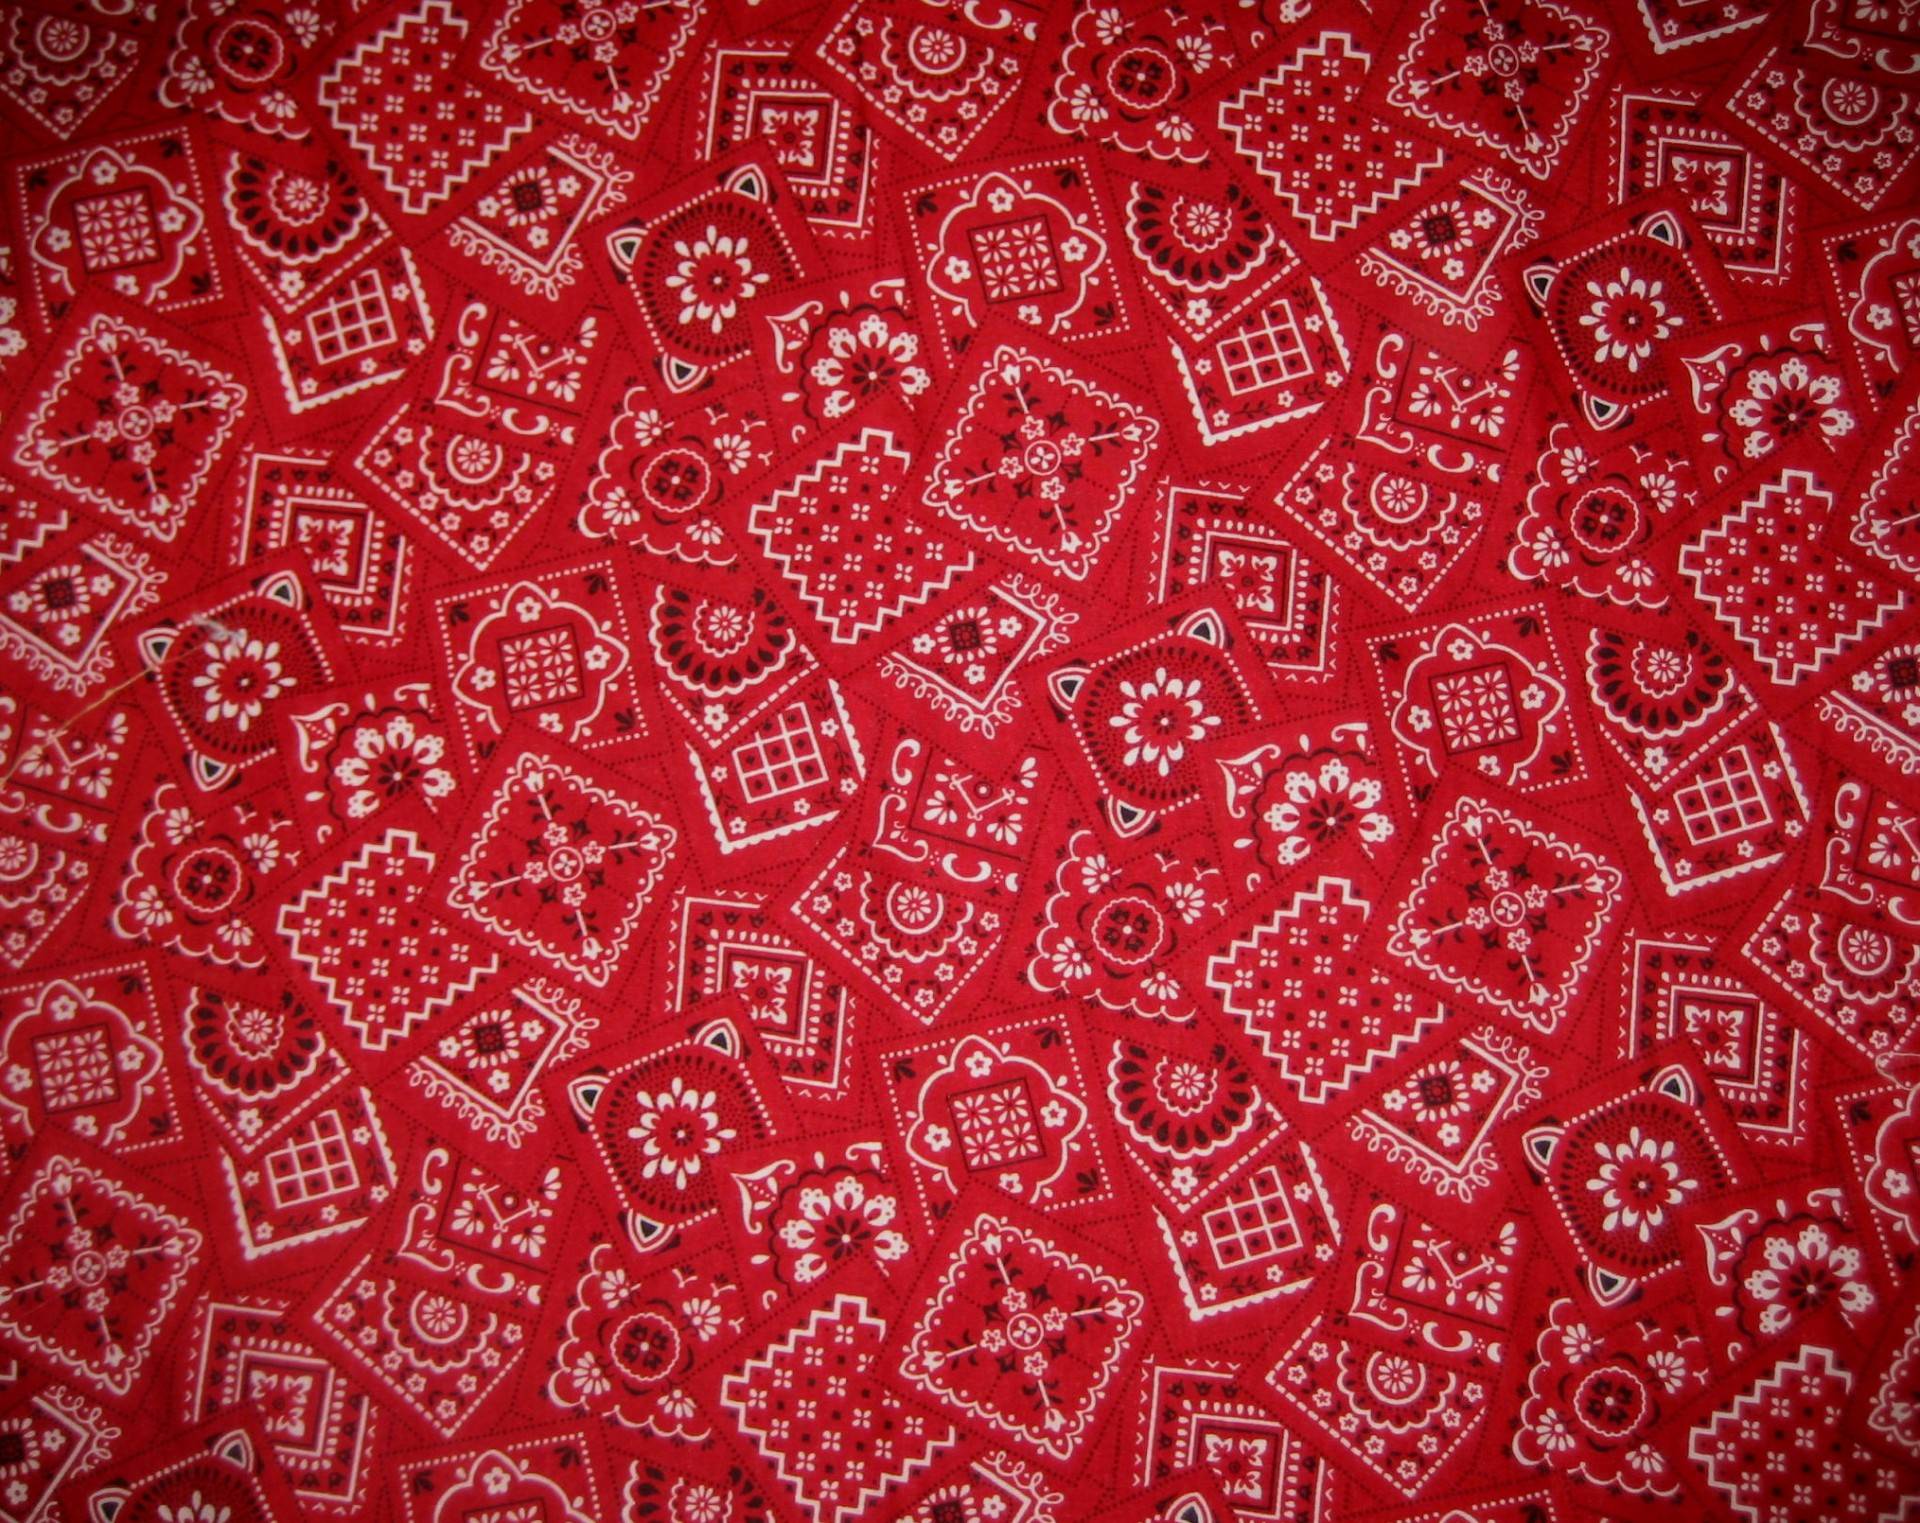 Red Bandana Wallpapers Wallpaper Cave HD Wallpapers Download Free Images Wallpaper [wallpaper981.blogspot.com]